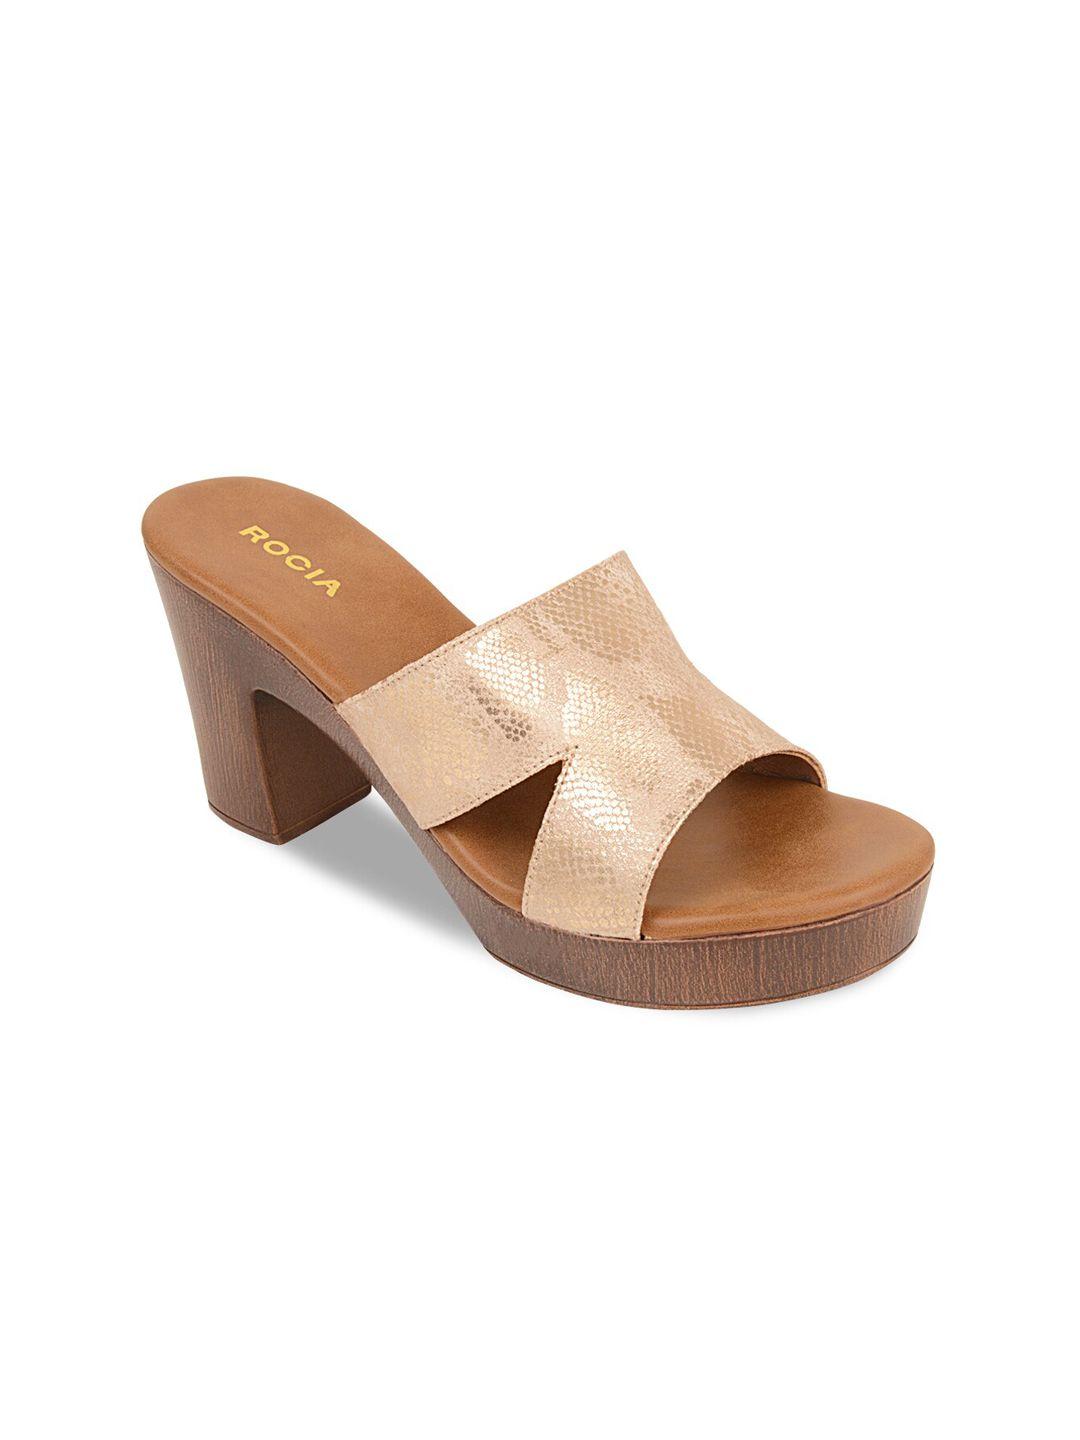 rocia-silver-toned-textured-block-sandals